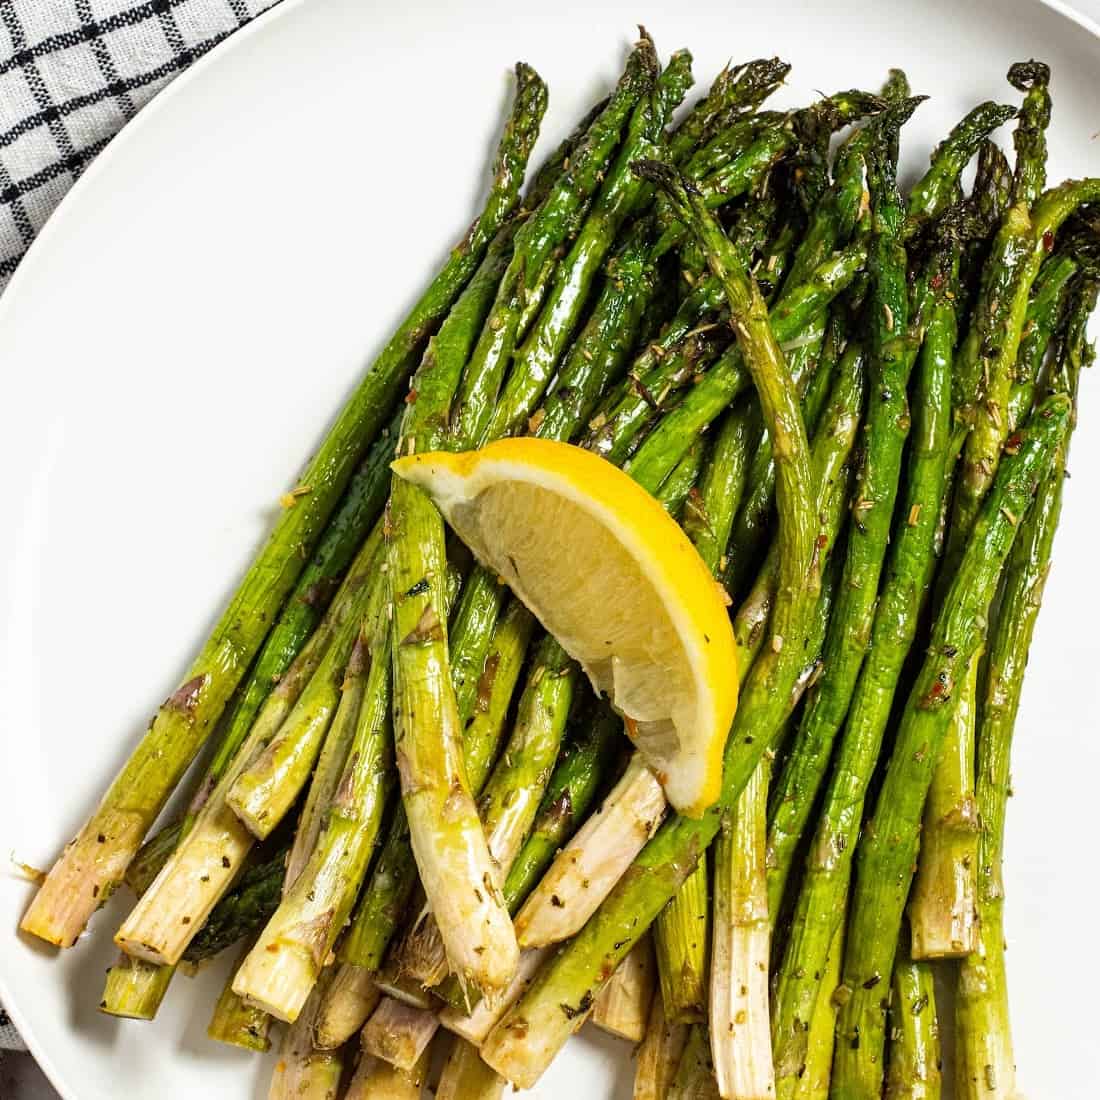 air fryer asparagus on a plate with a lemon slice